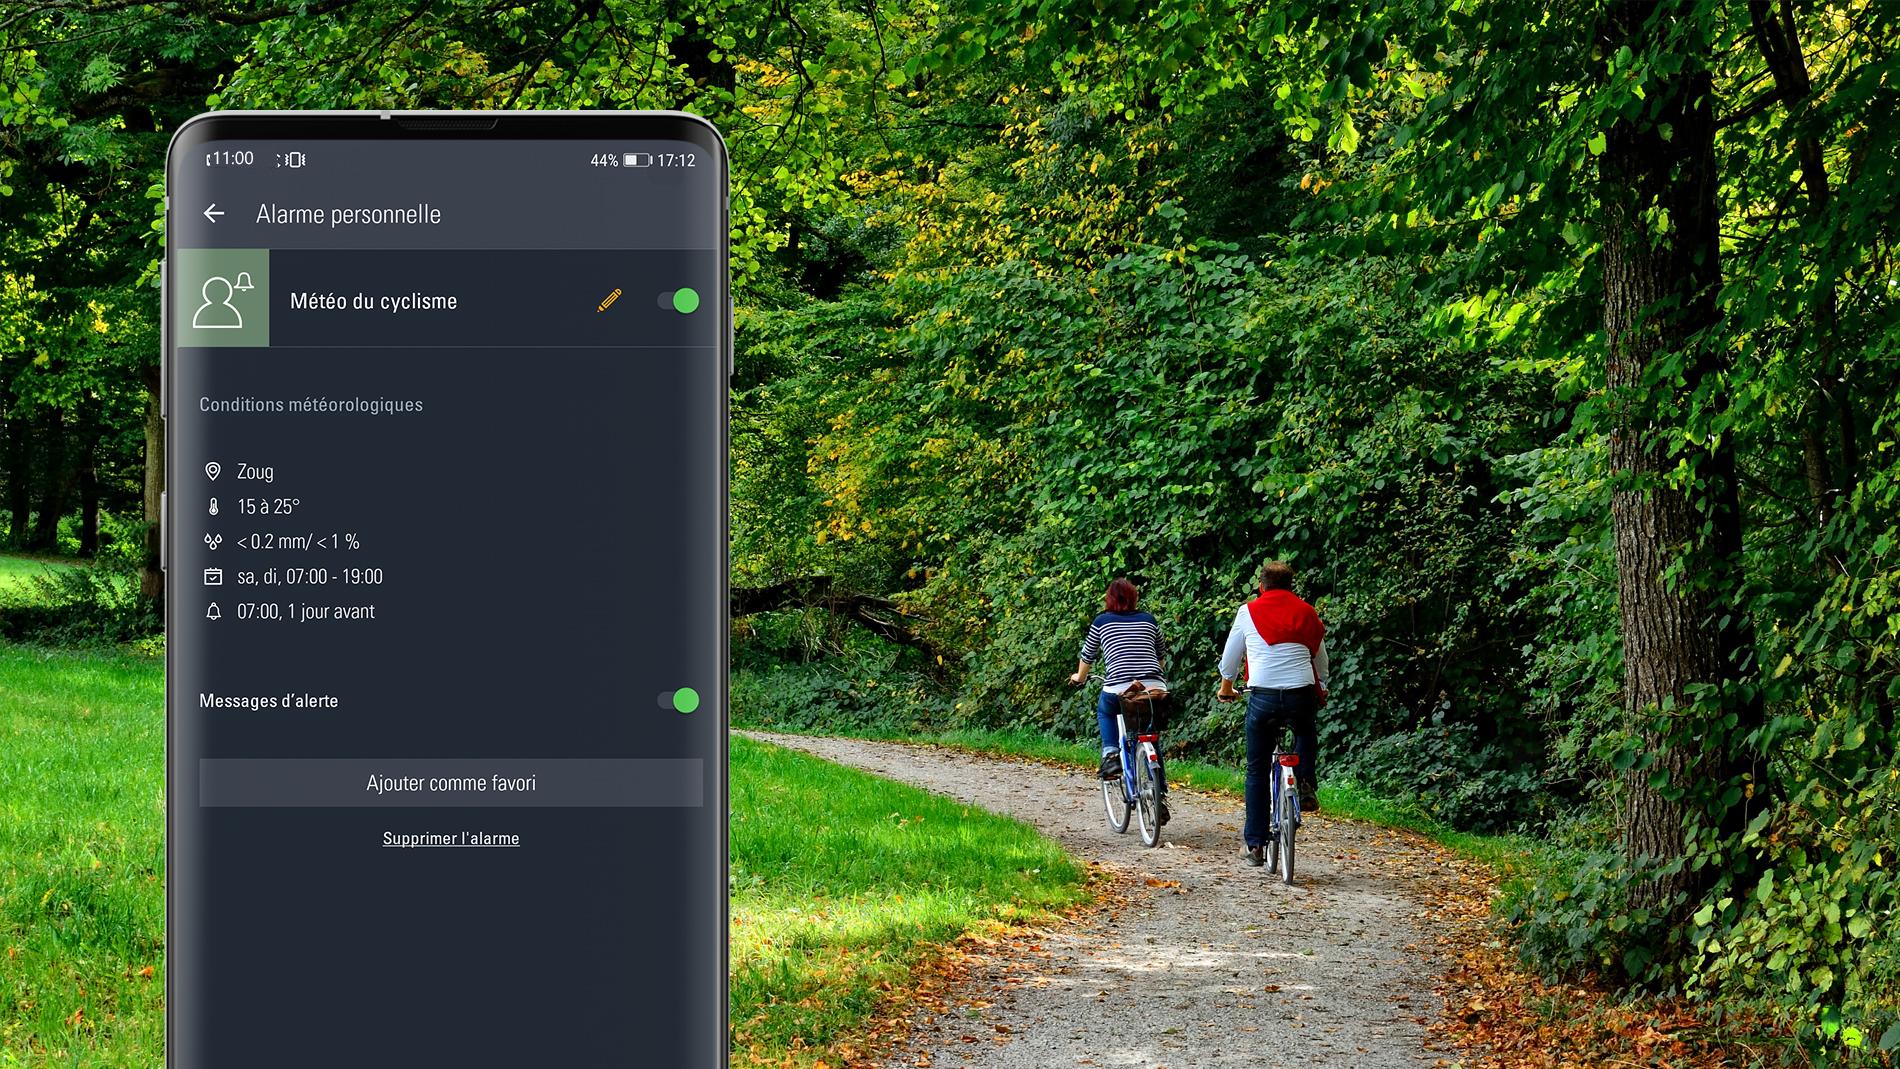 alarme personnelle pour le cyclisme sur un smartphone